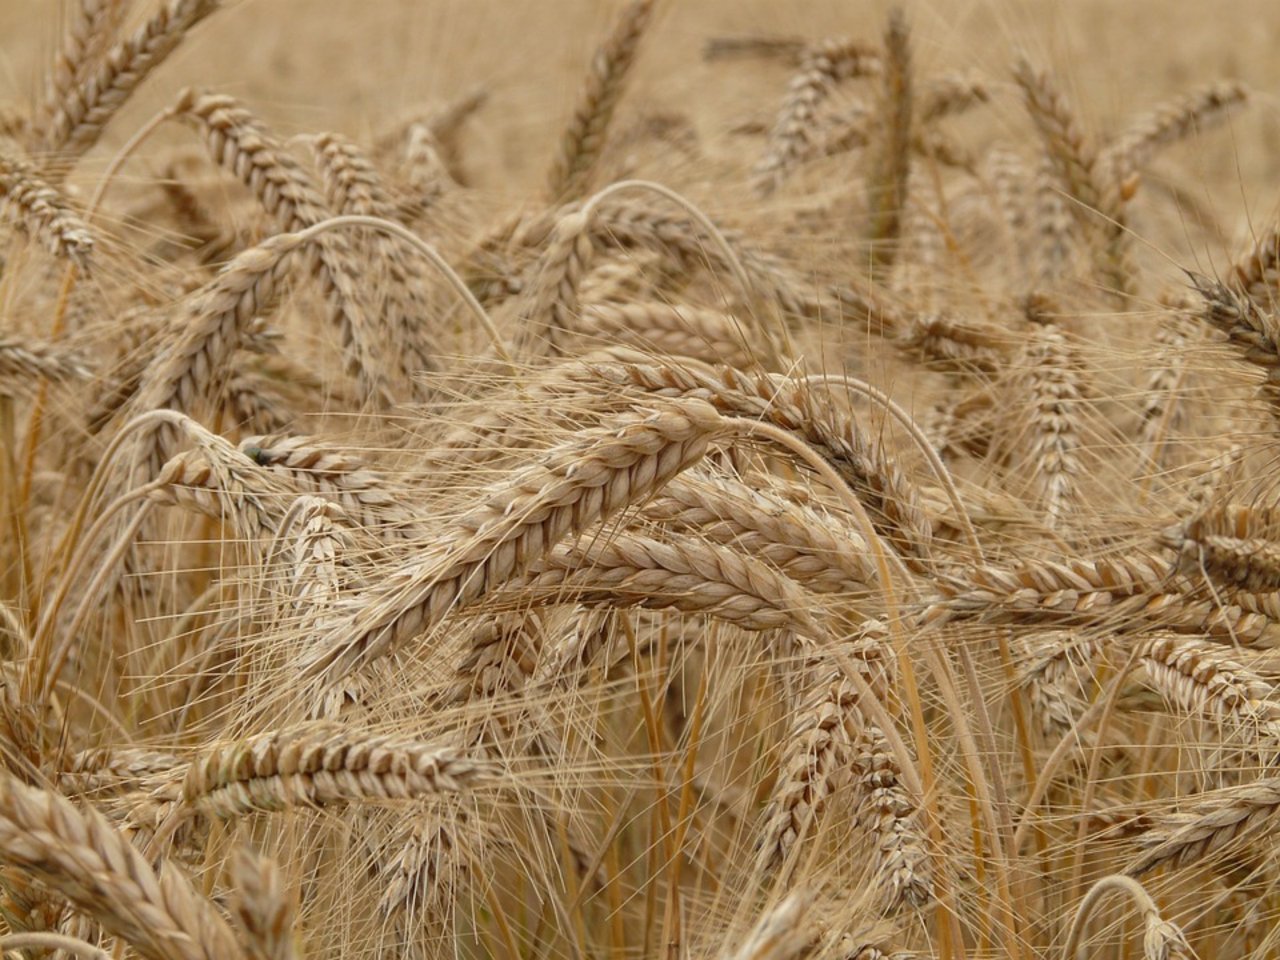 Der Ernteschätzung zufolge werden die australischen Farmer an allen Feldfrüchten grössere Mengen als 2015/16 einbringen, ganz besonders soll das bei Weizen der Fall sein. (Bild Pixabay)